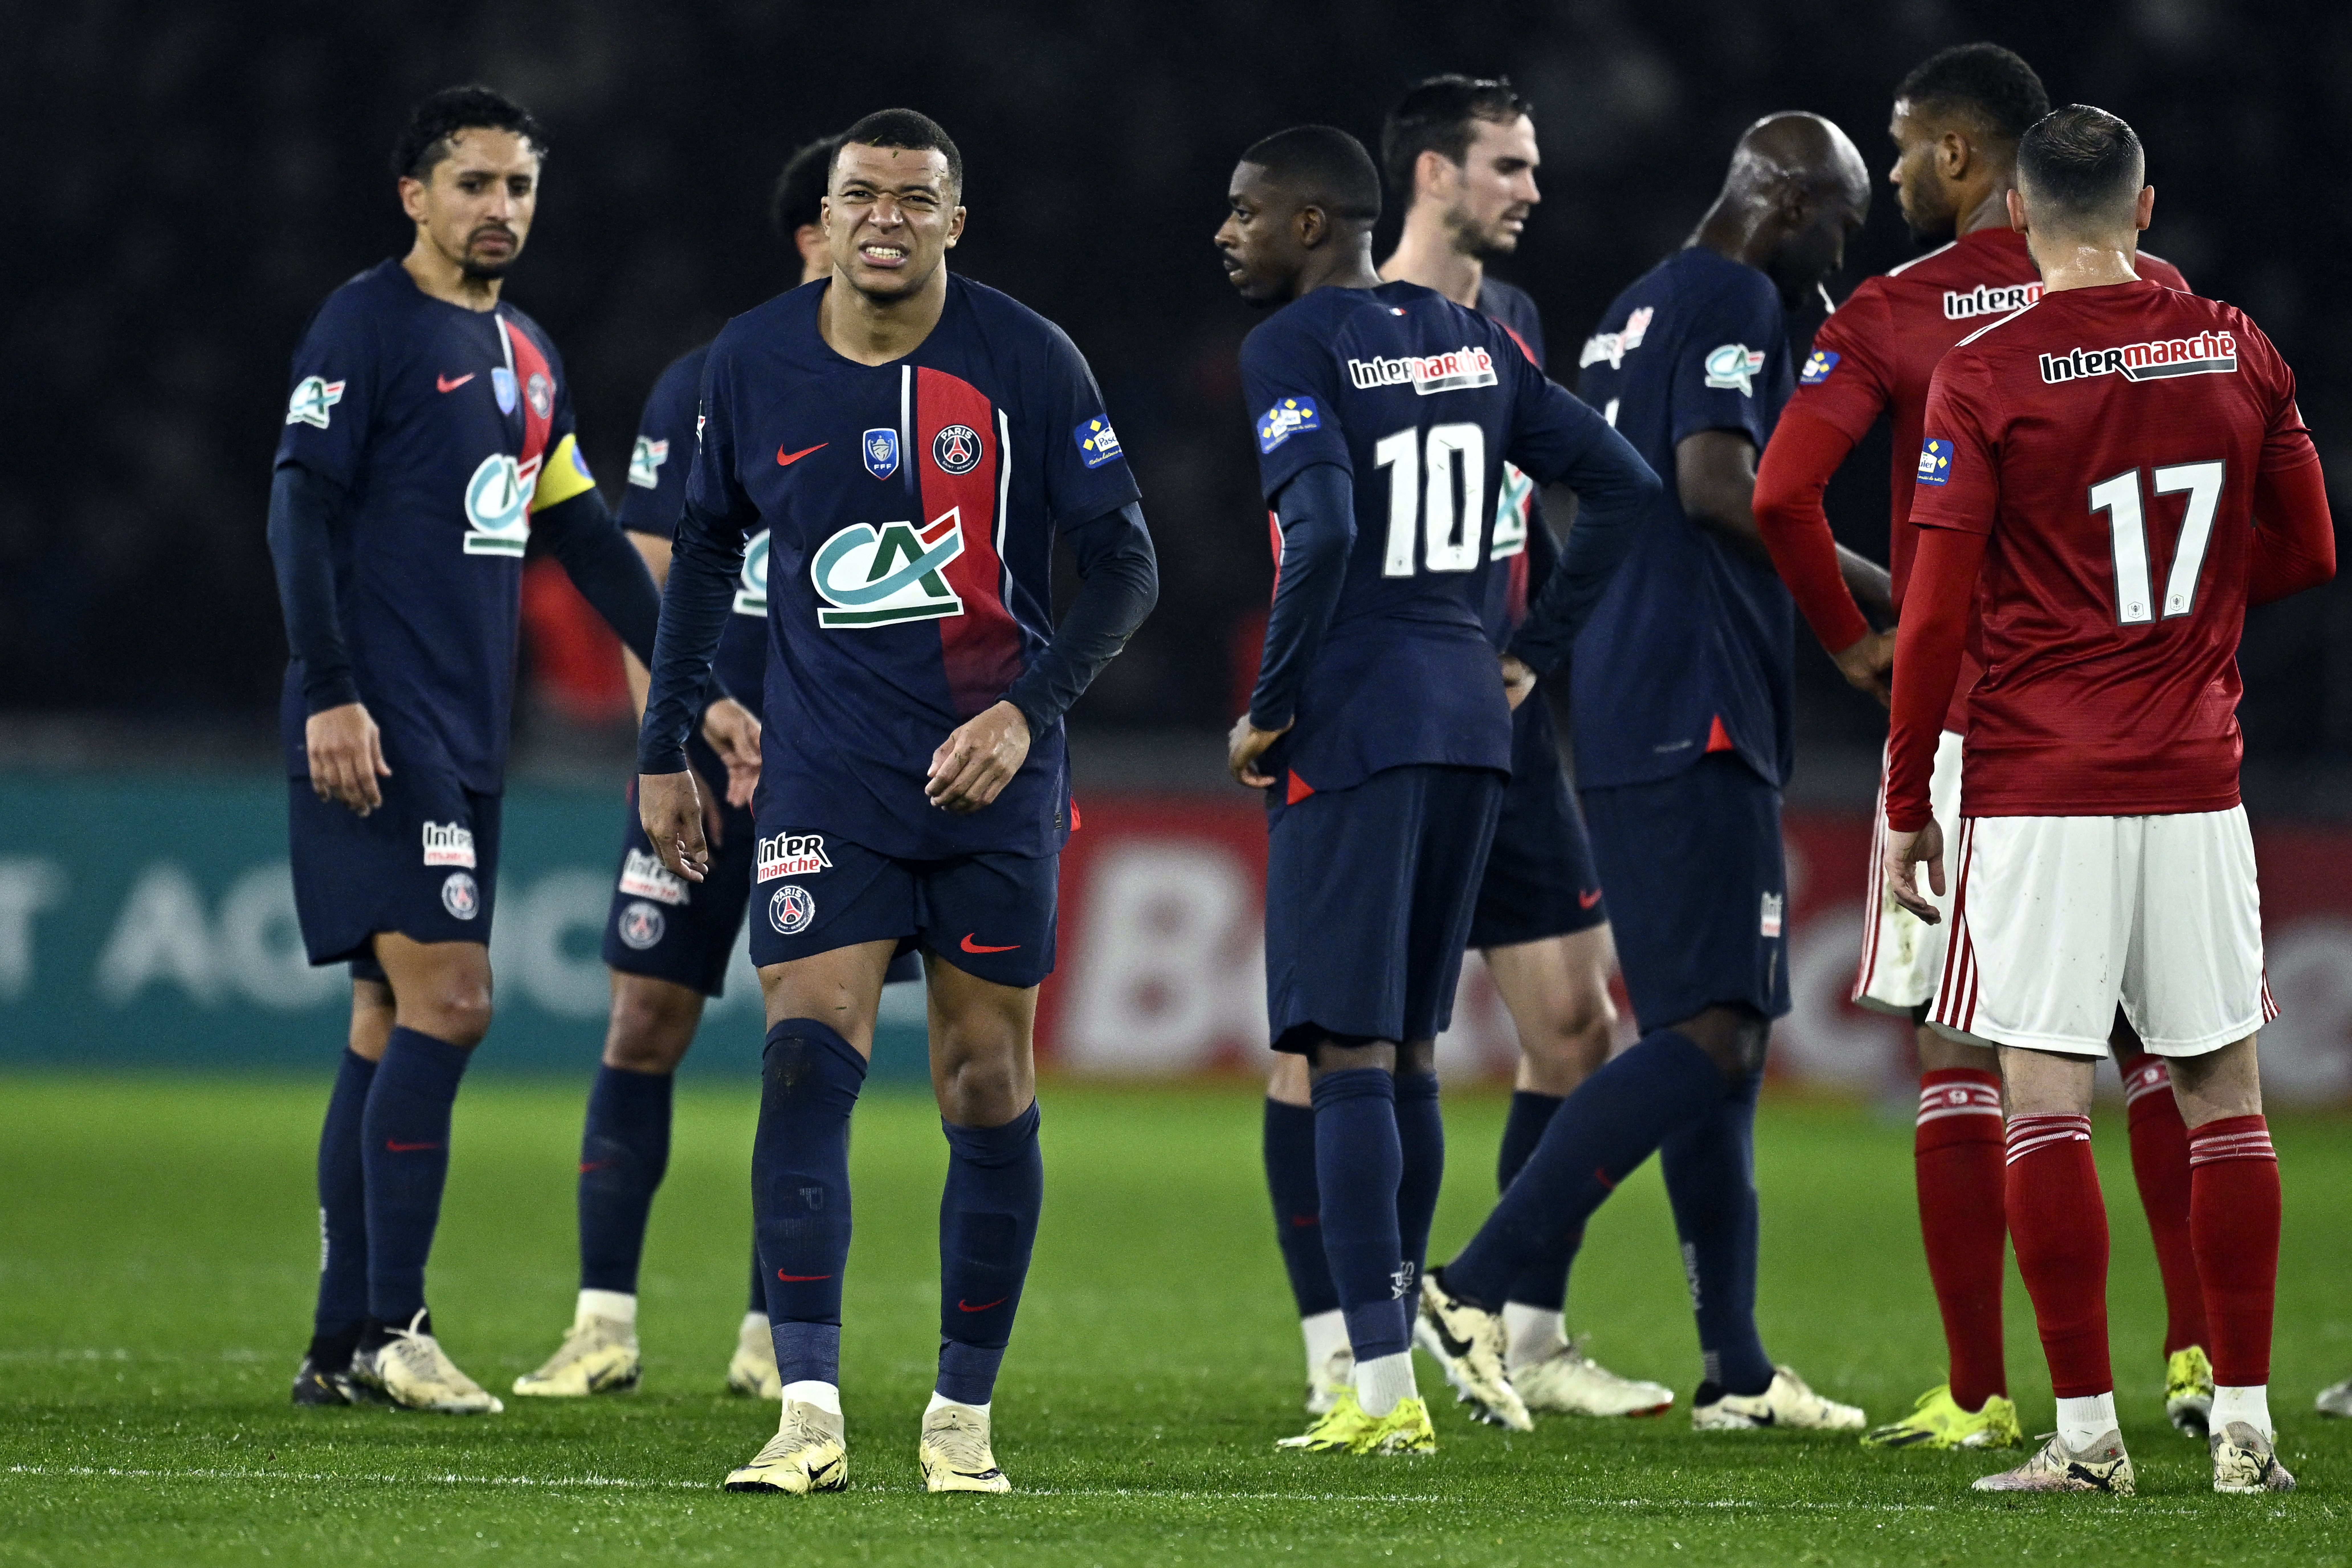 Jugadores del PSG en partido de la jornada pasada en la liga de Francia.